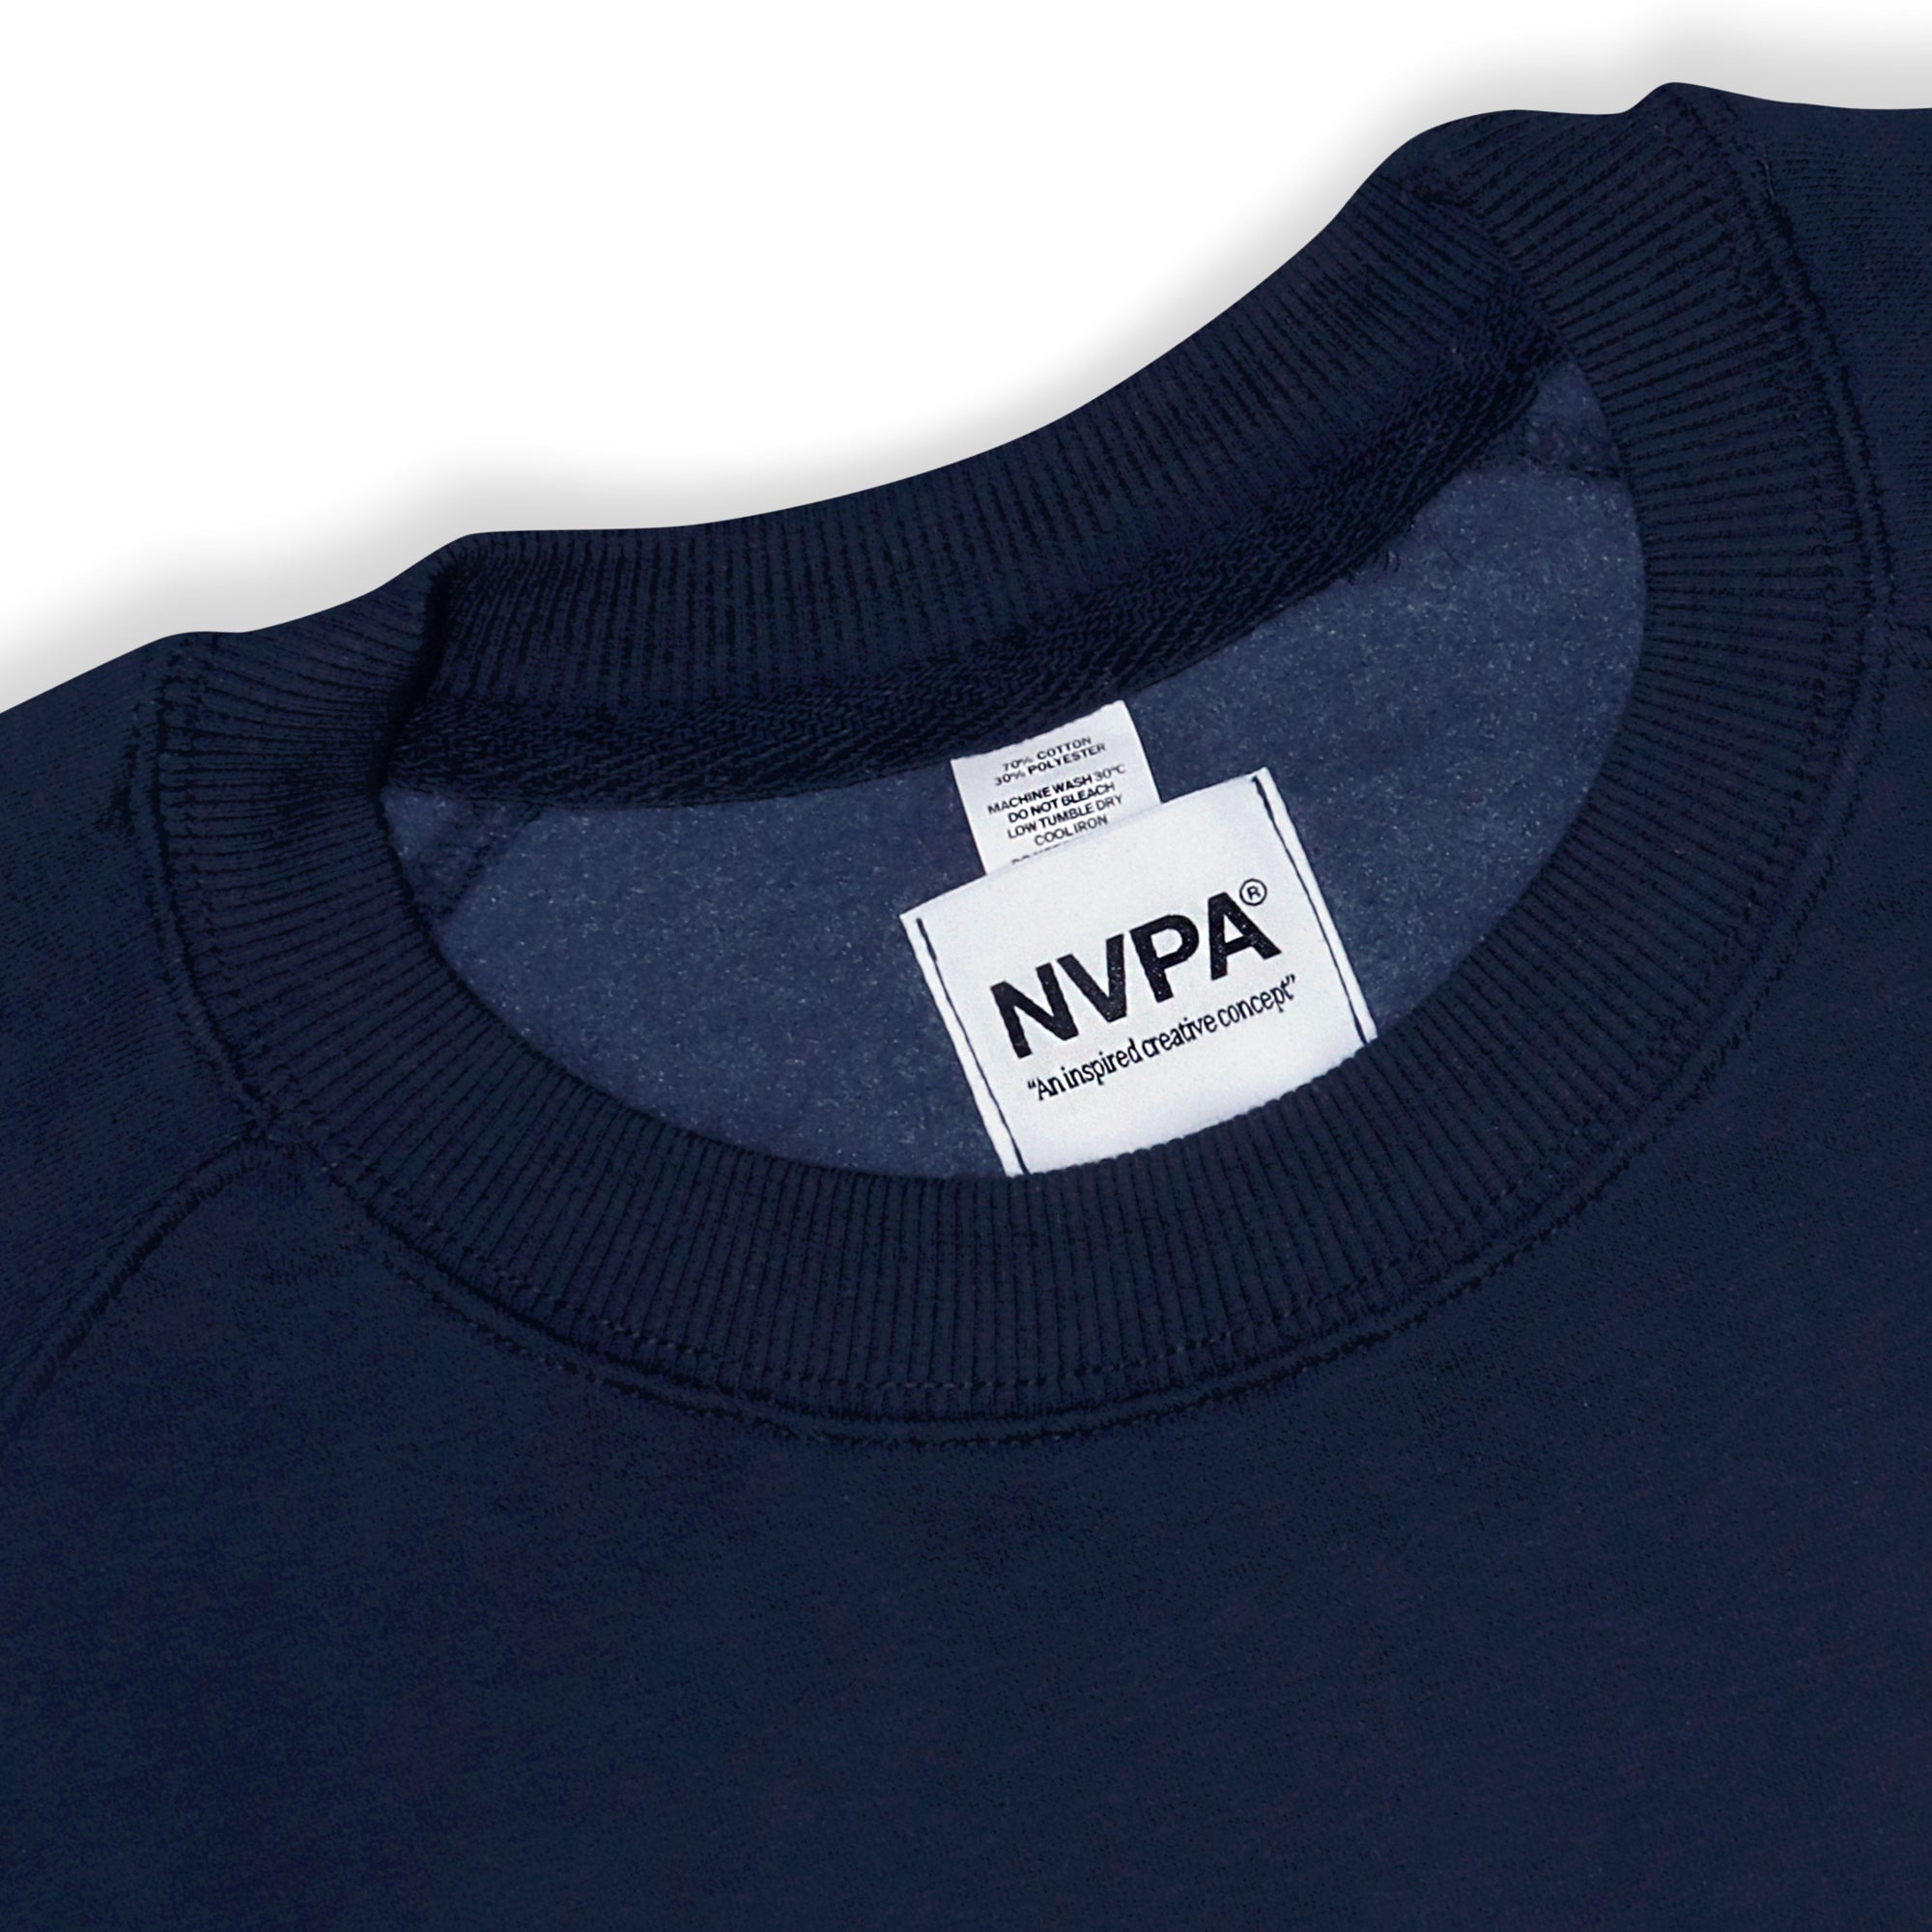 NVPA® Navy sweatshirt label detail